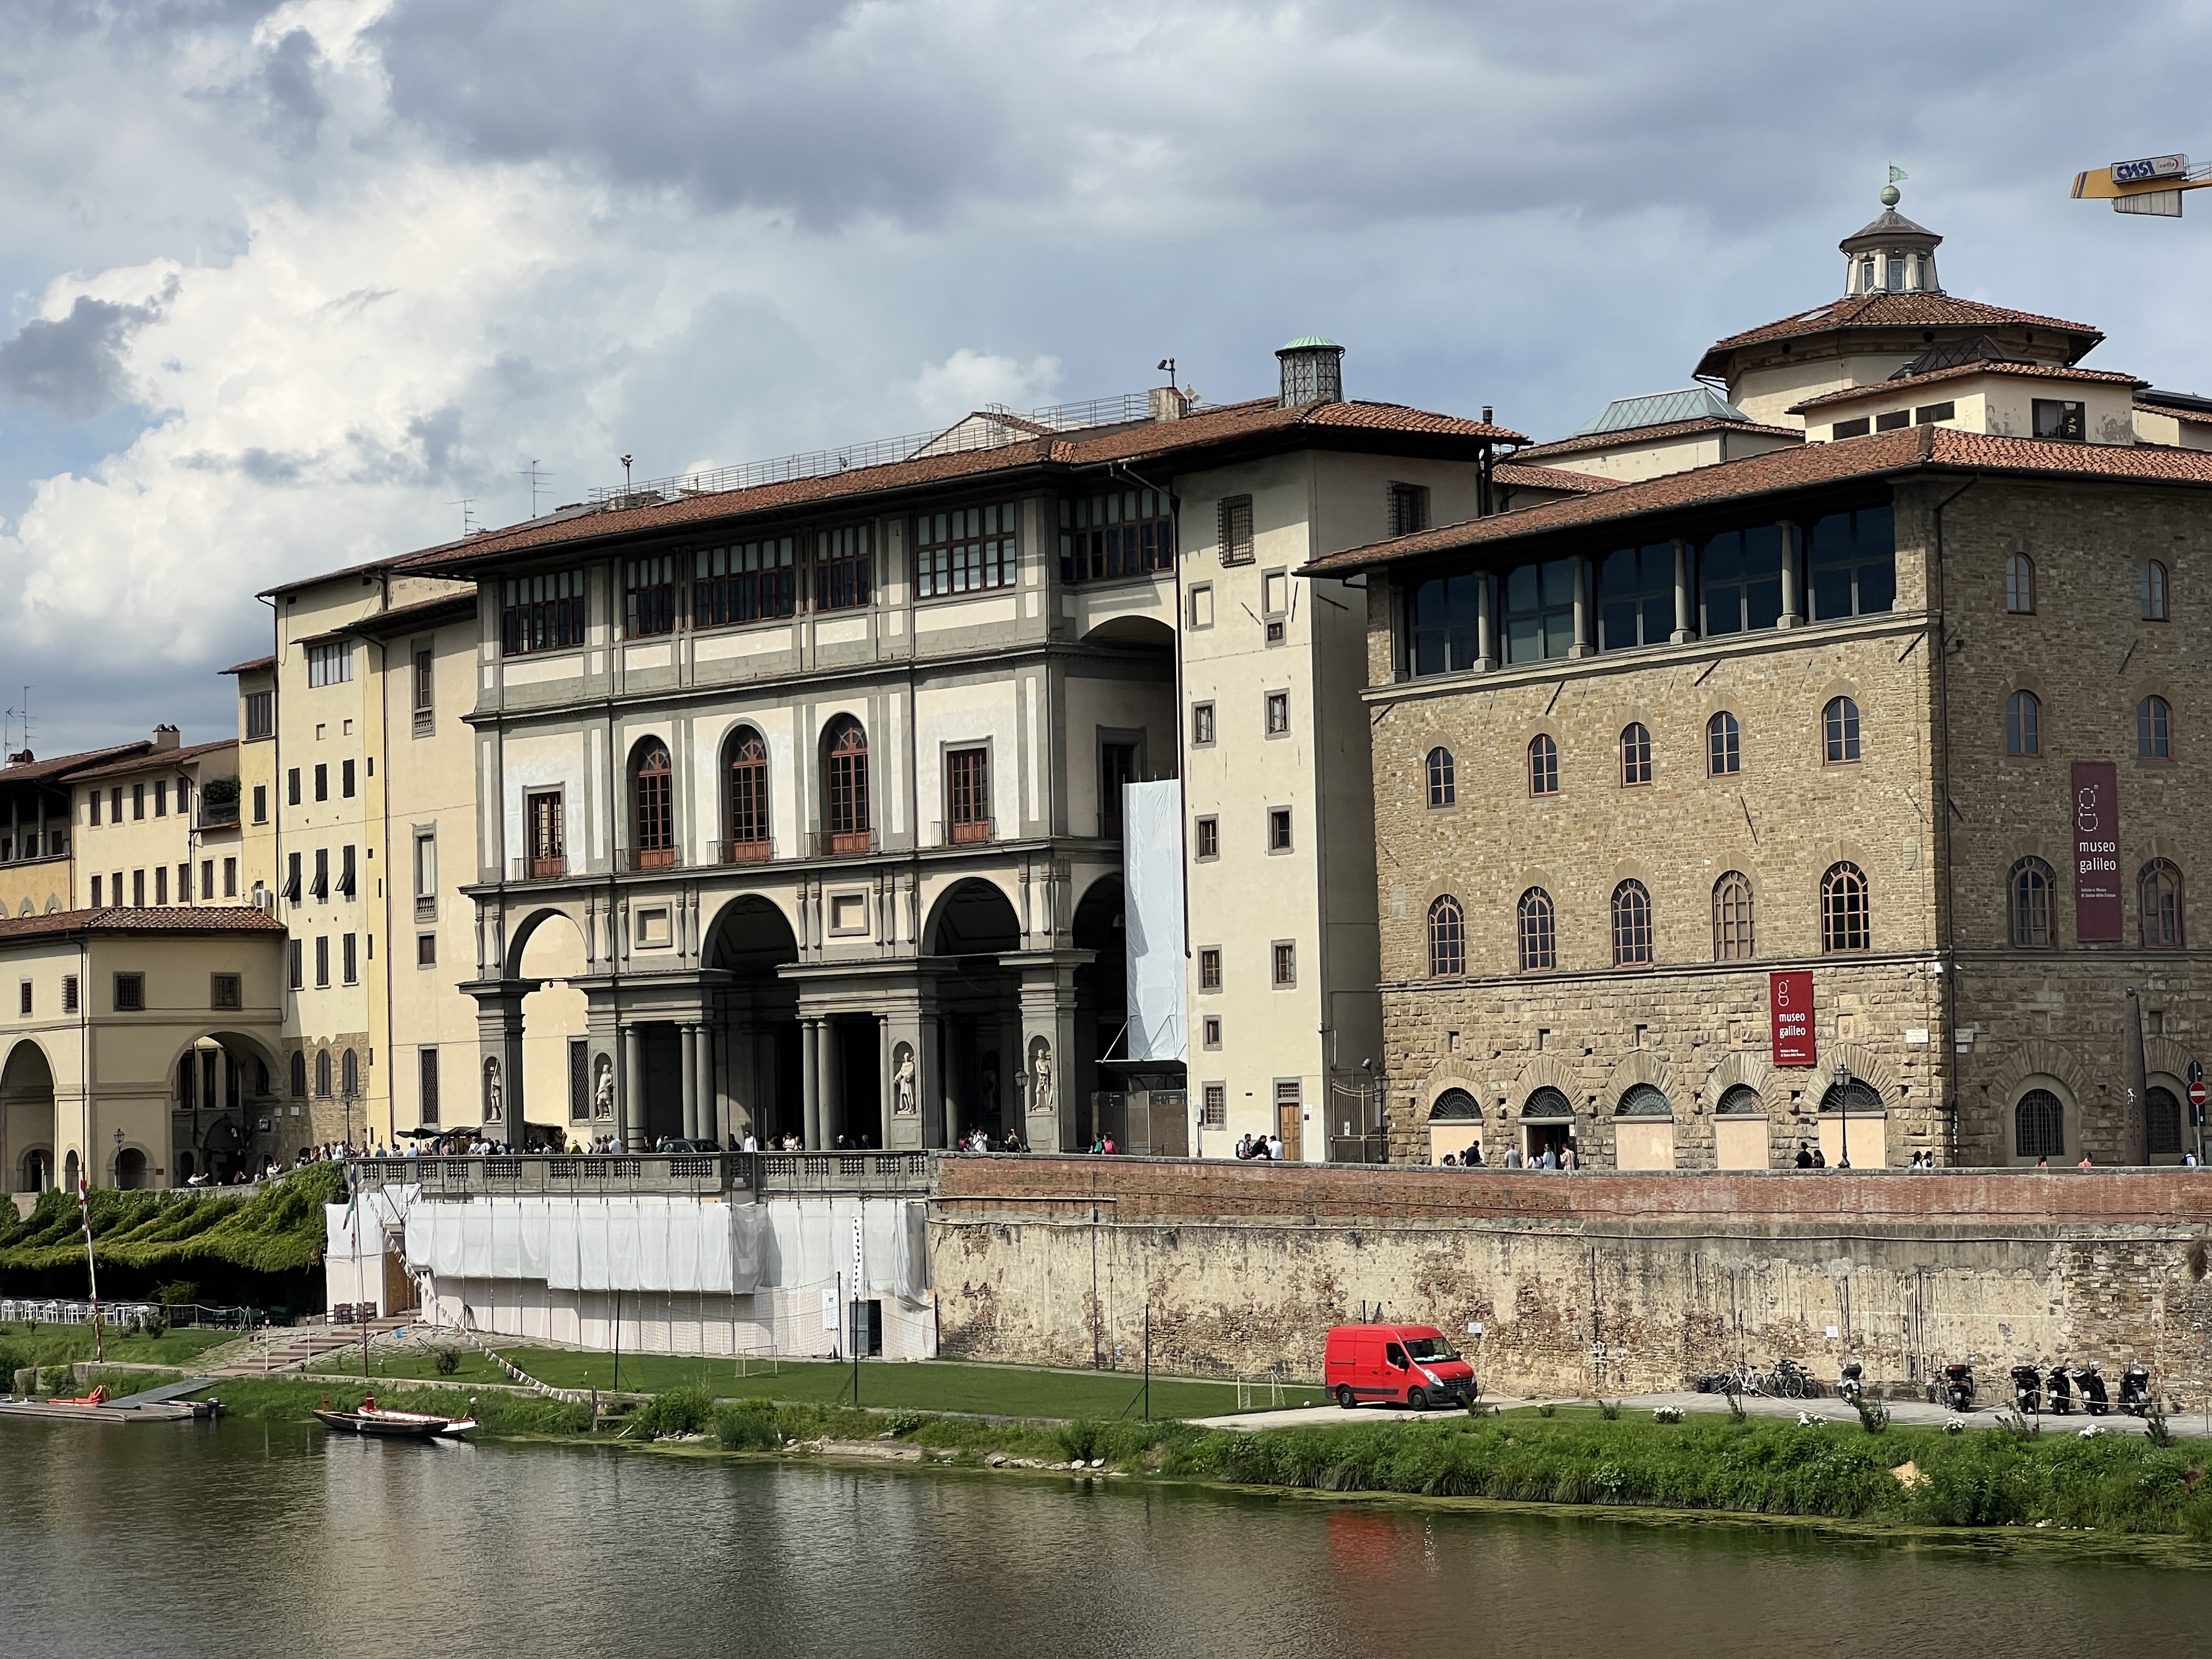 5 52 2022. Археологический музей во Флоренции. Дворец Уффици вид с реки.